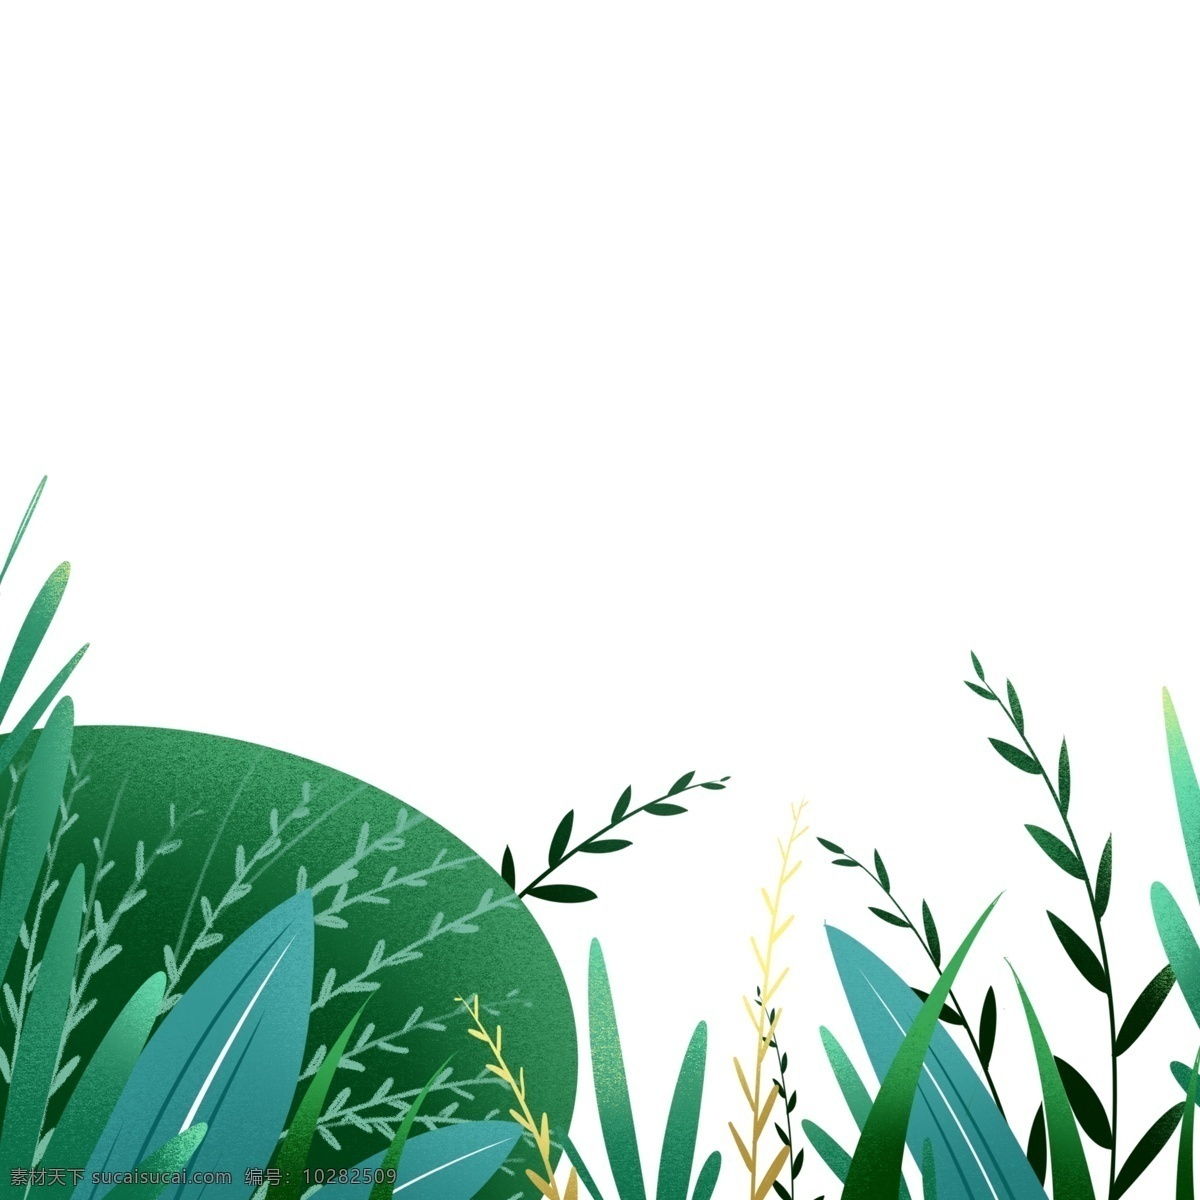 夏季 绿叶 草丛 图案 元素 夏季元素 绿色 花草图案 手绘 创意元素 psd元素 免抠元素